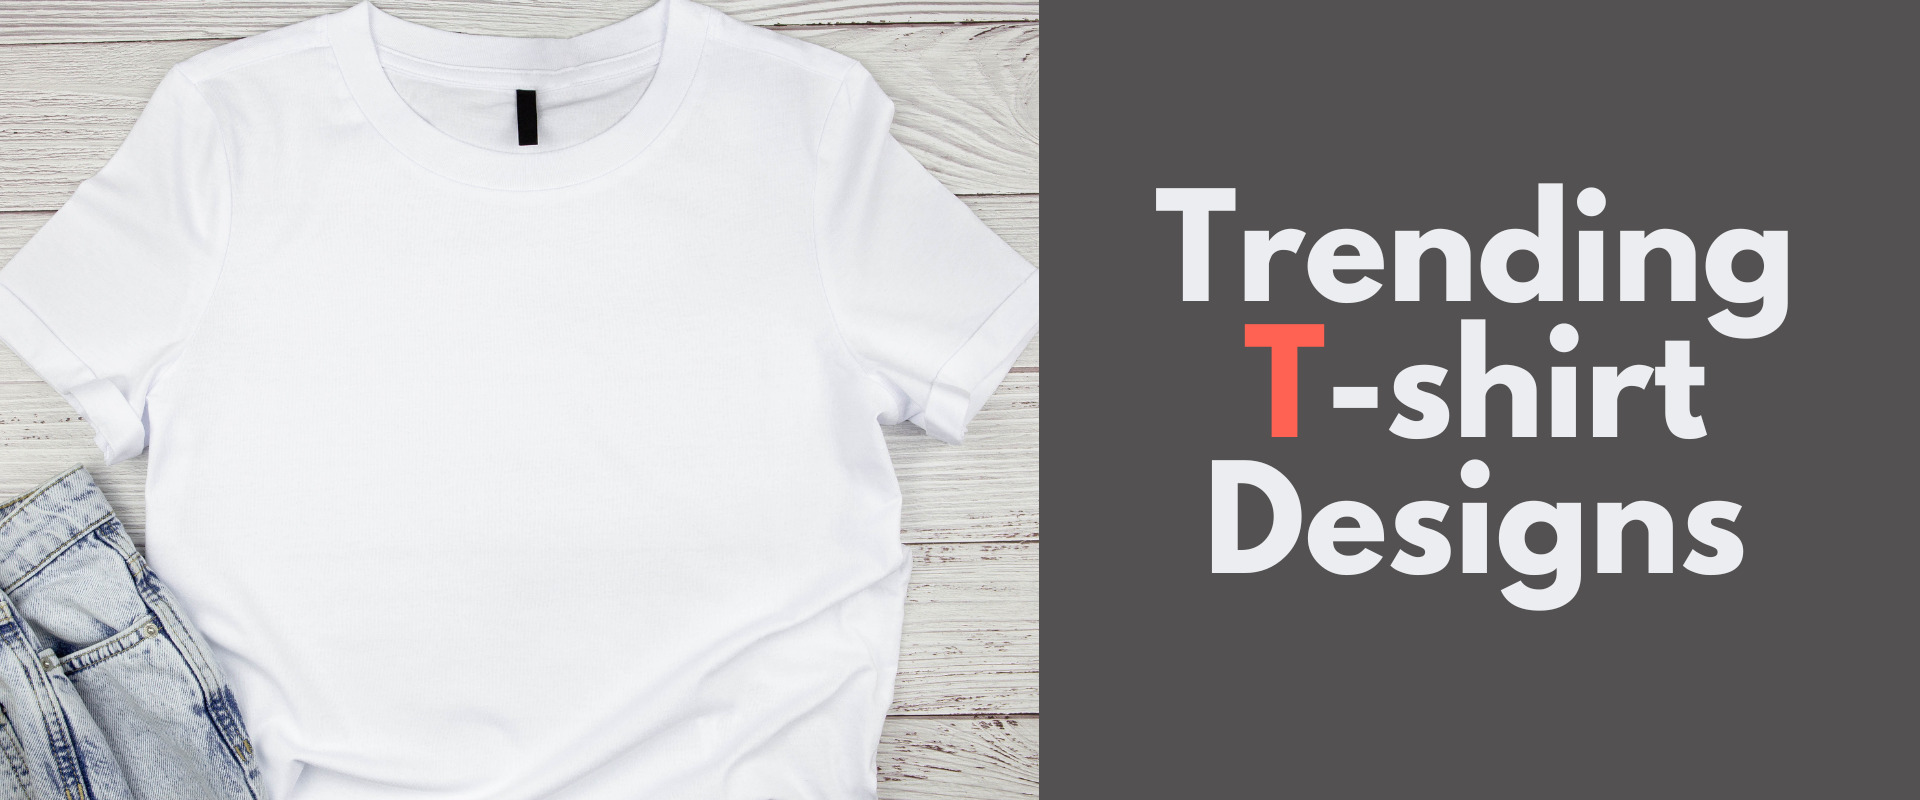 Trending t-shirt design